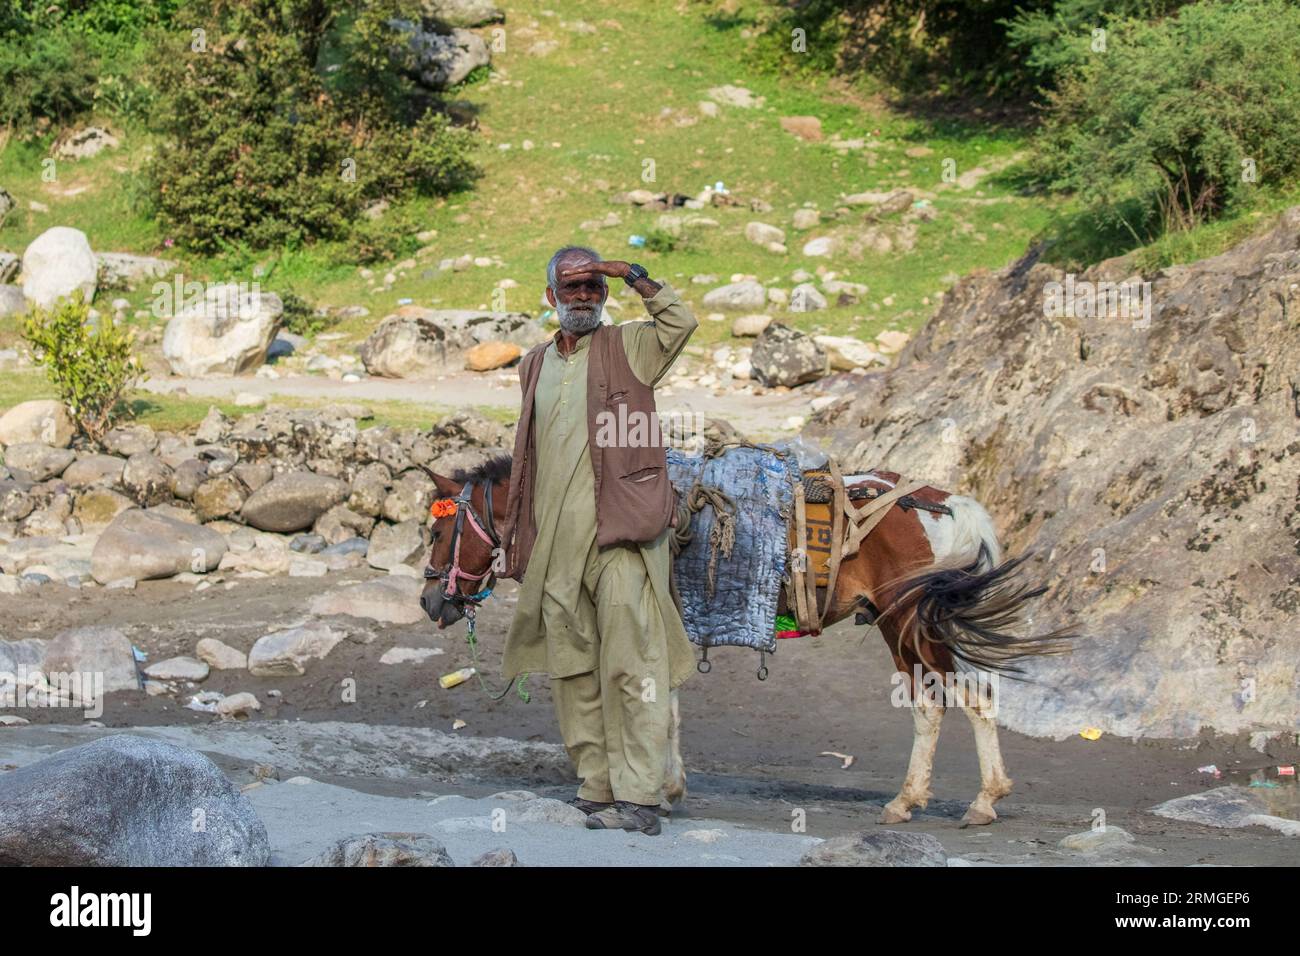 24 agosto 2023, Keran, Jammu e Kashmir, India: Un cavaliere del Kashmir guarda il villaggio di Keran nel distretto di confine Kupwara circa 150 km a nord di Srinagar. Il villaggio di Keran si trova sulle rive del fiume Neelam o Kishan Ganga, sulla linea di controllo. (Immagine di credito: © Faisal Bashir/SOPA Images via ZUMA Press Wire) SOLO PER USO EDITORIALE! Non per USO commerciale! Foto Stock